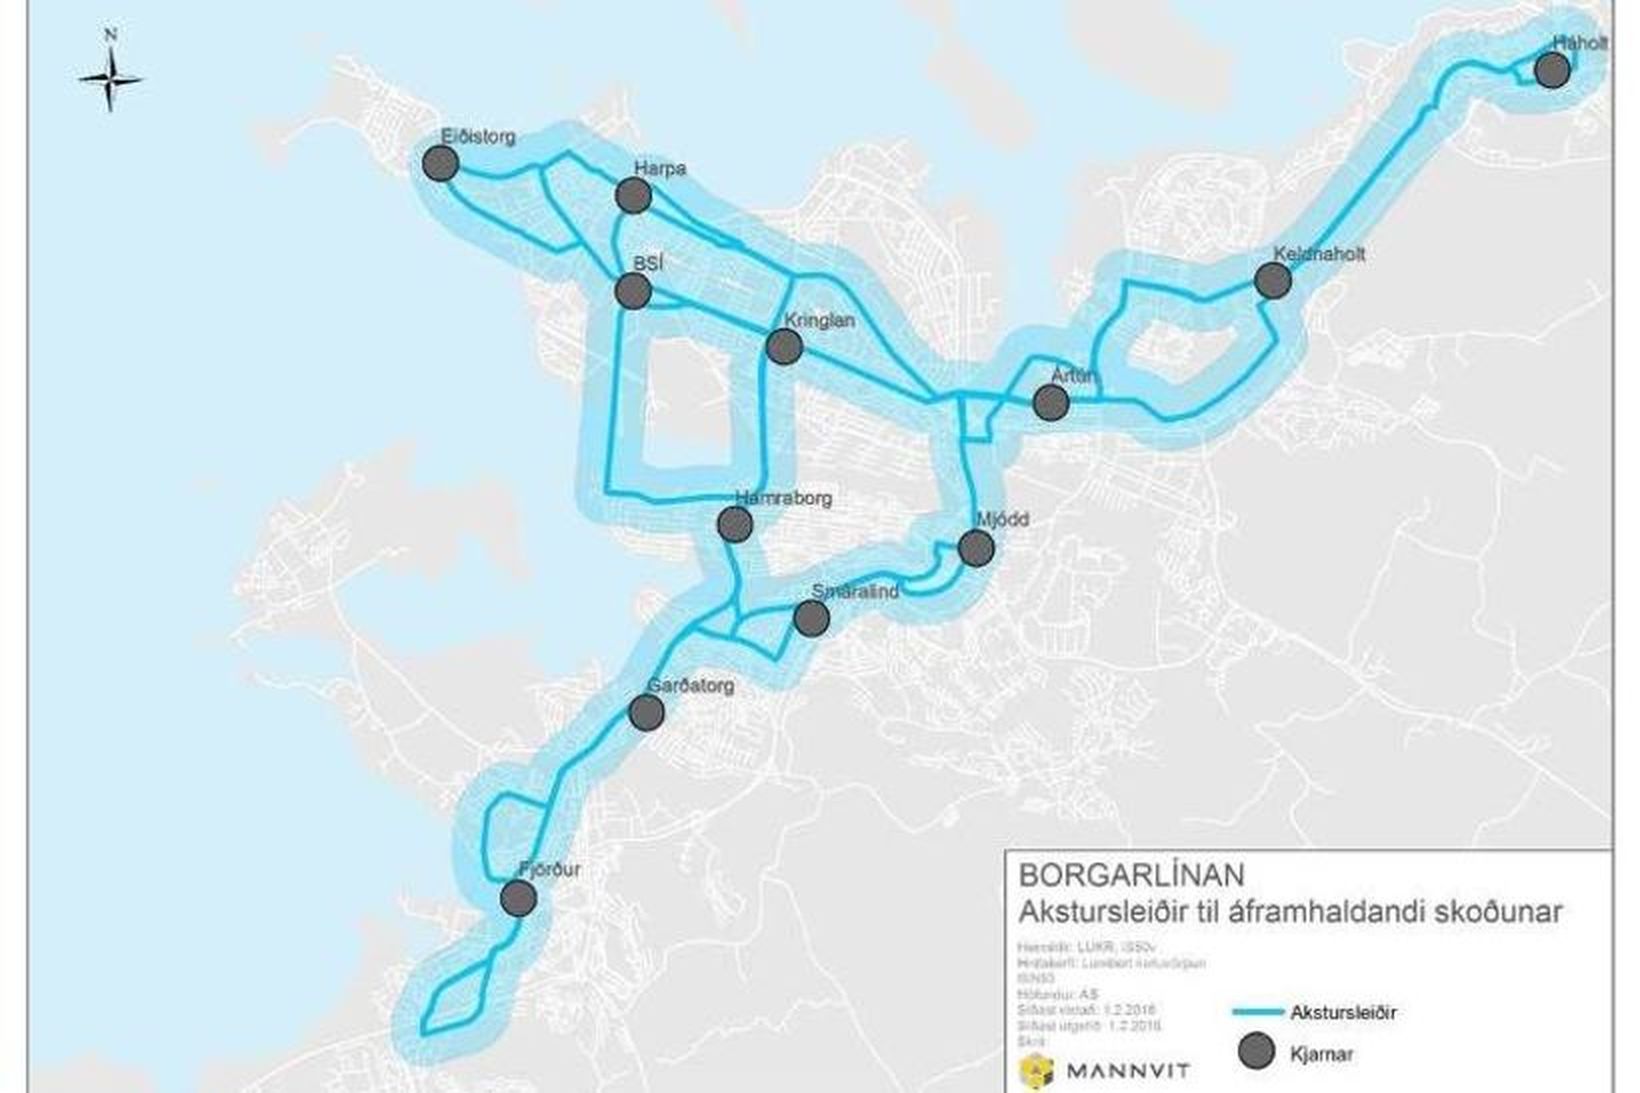 Kort af fyrirætlaðri borgarlínu á höfuðborgarsvæðinu.